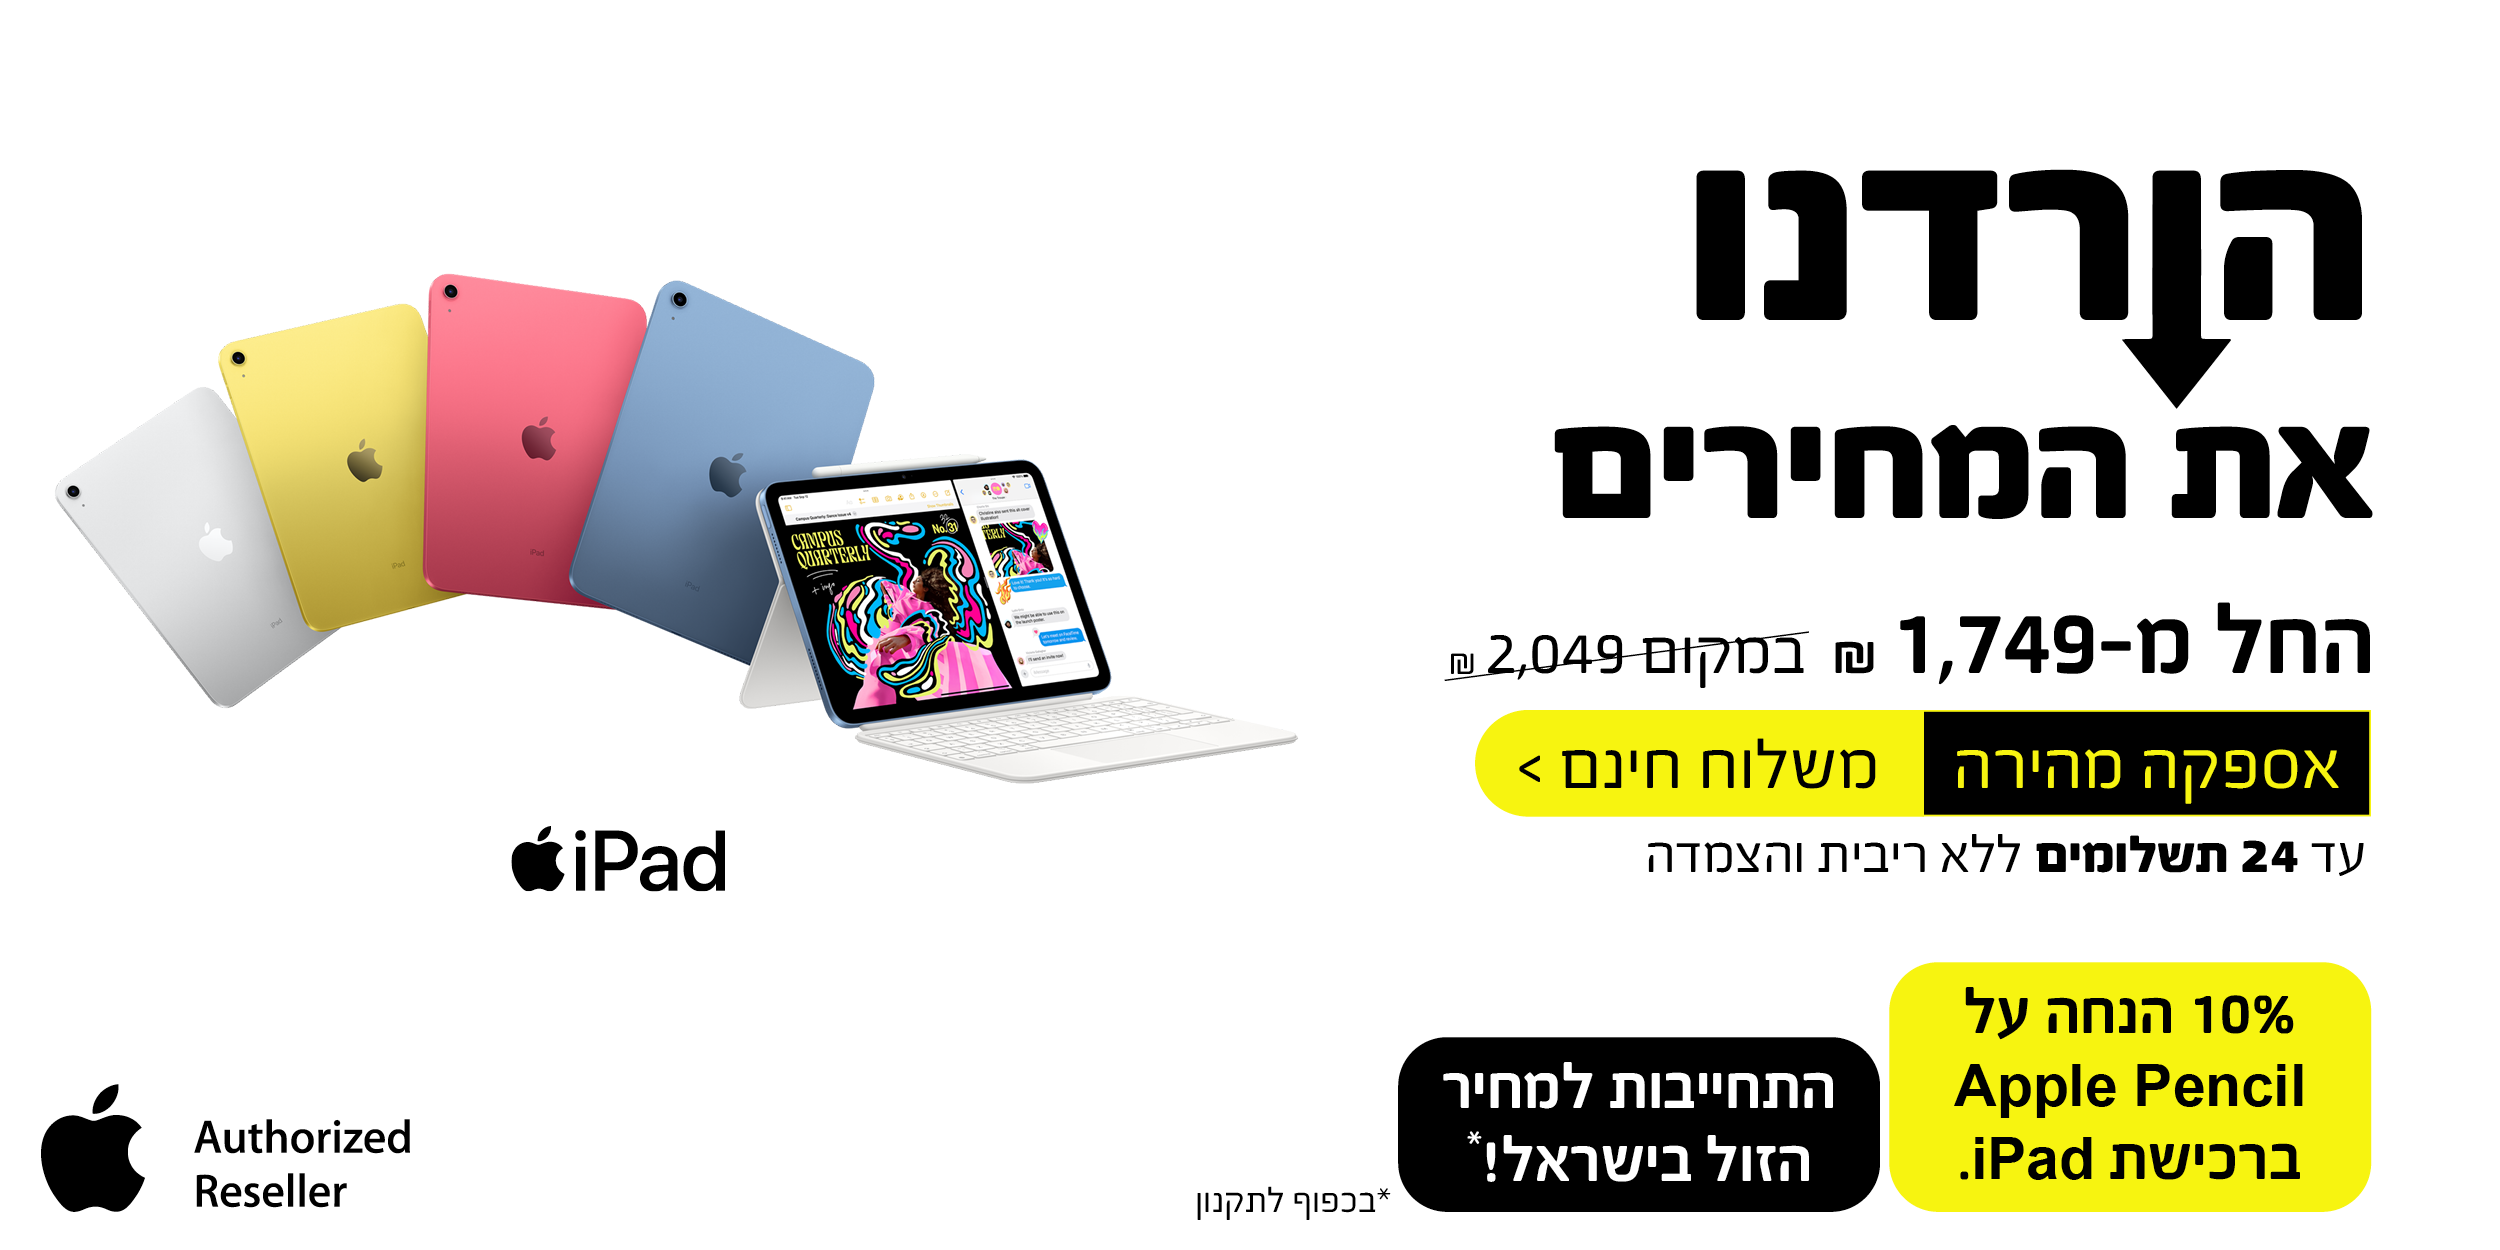 iPad הורדנו את המחירים החל מ- 1,749 ש